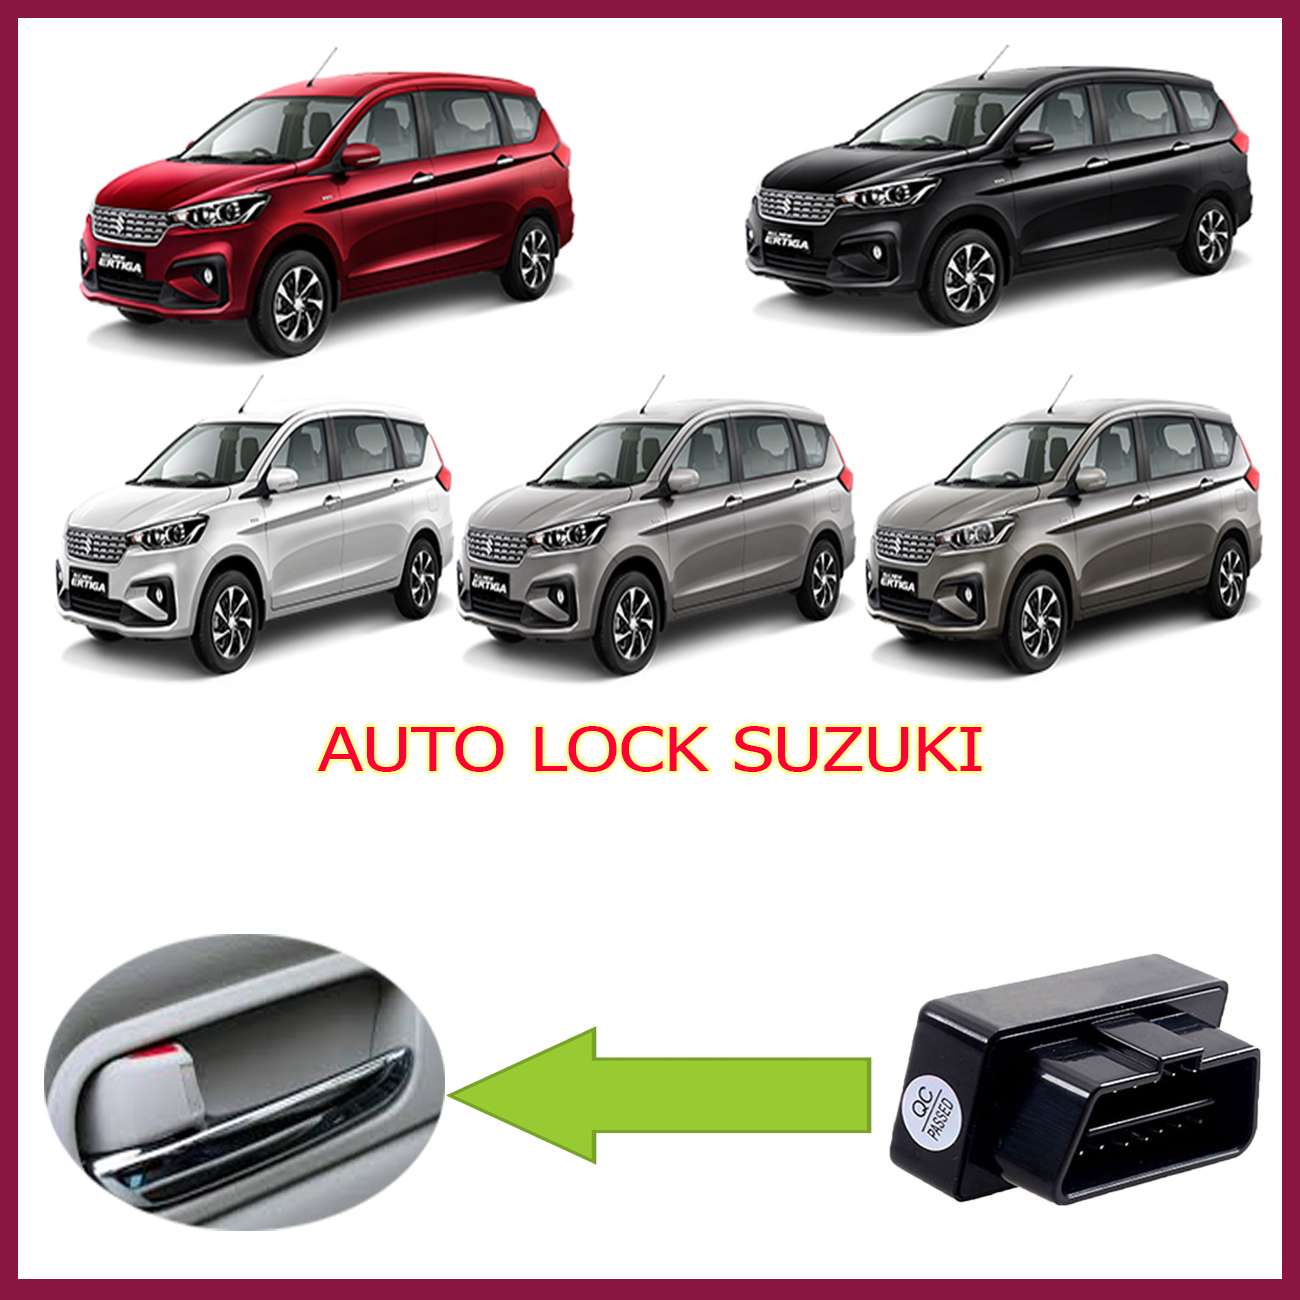 Bảng giá xe ô tô Suzuki 2020 mới nhất cập nhật tháng 042020